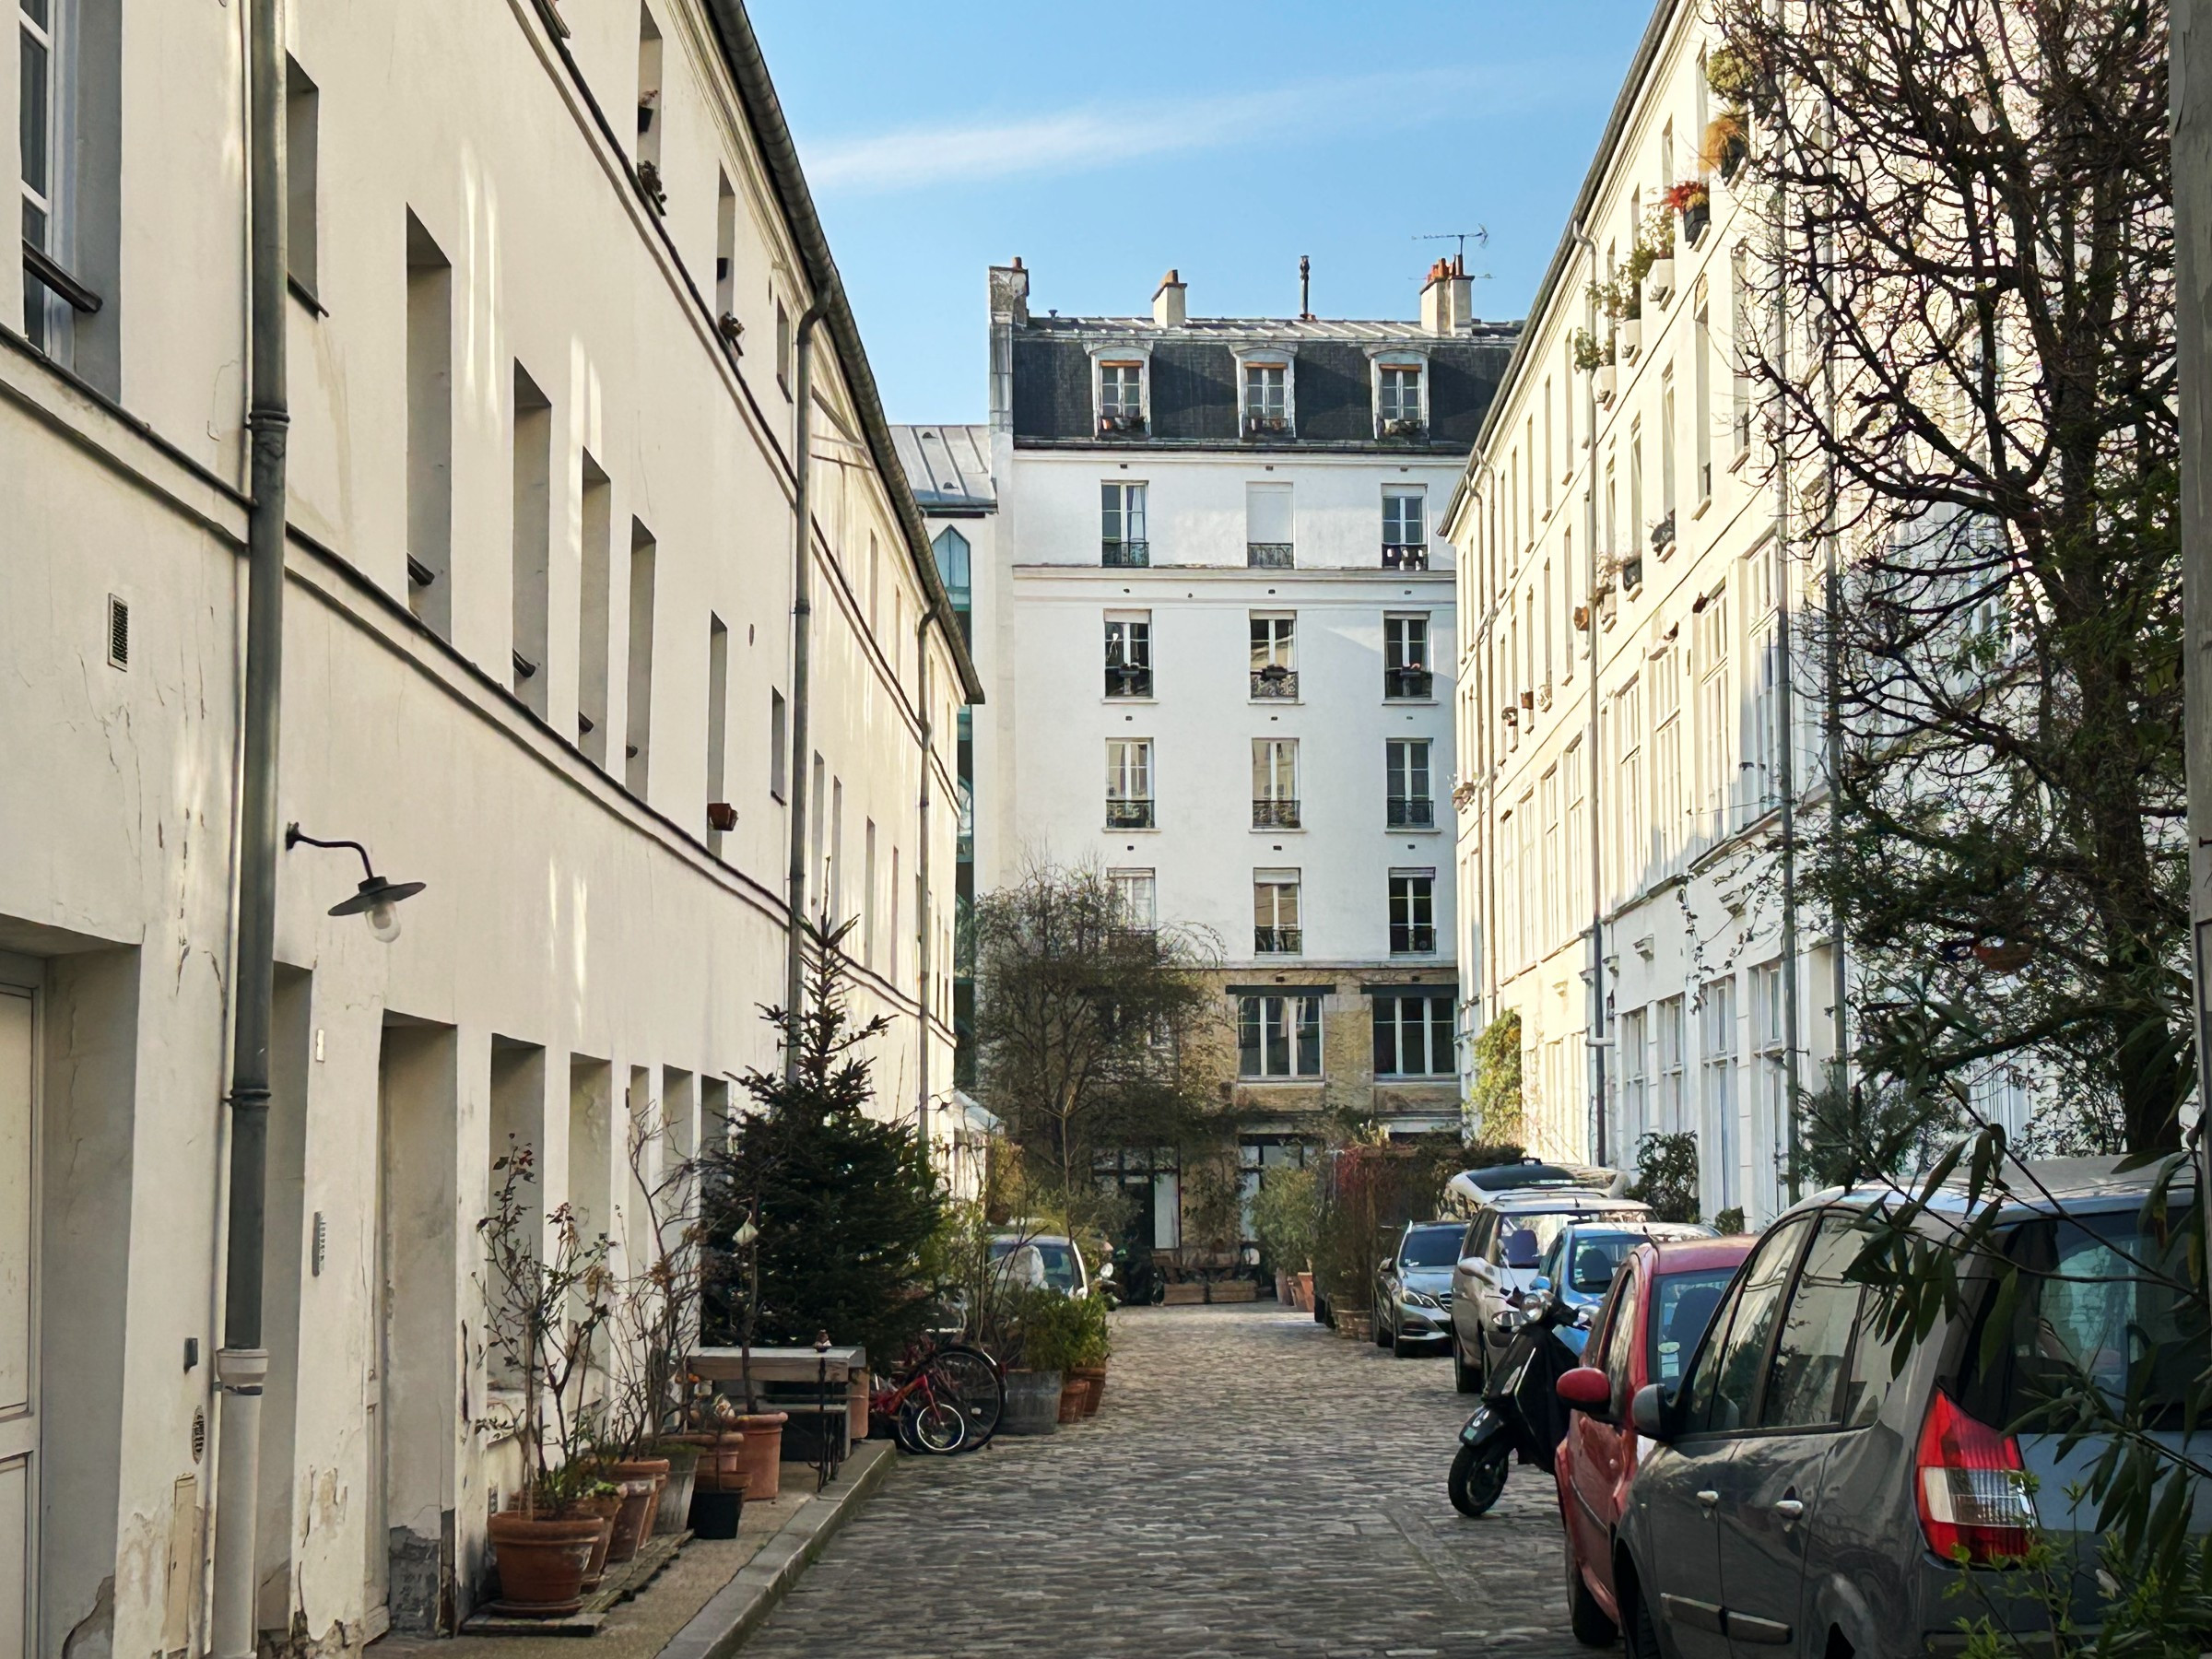 quiet, cobbled street in Paris